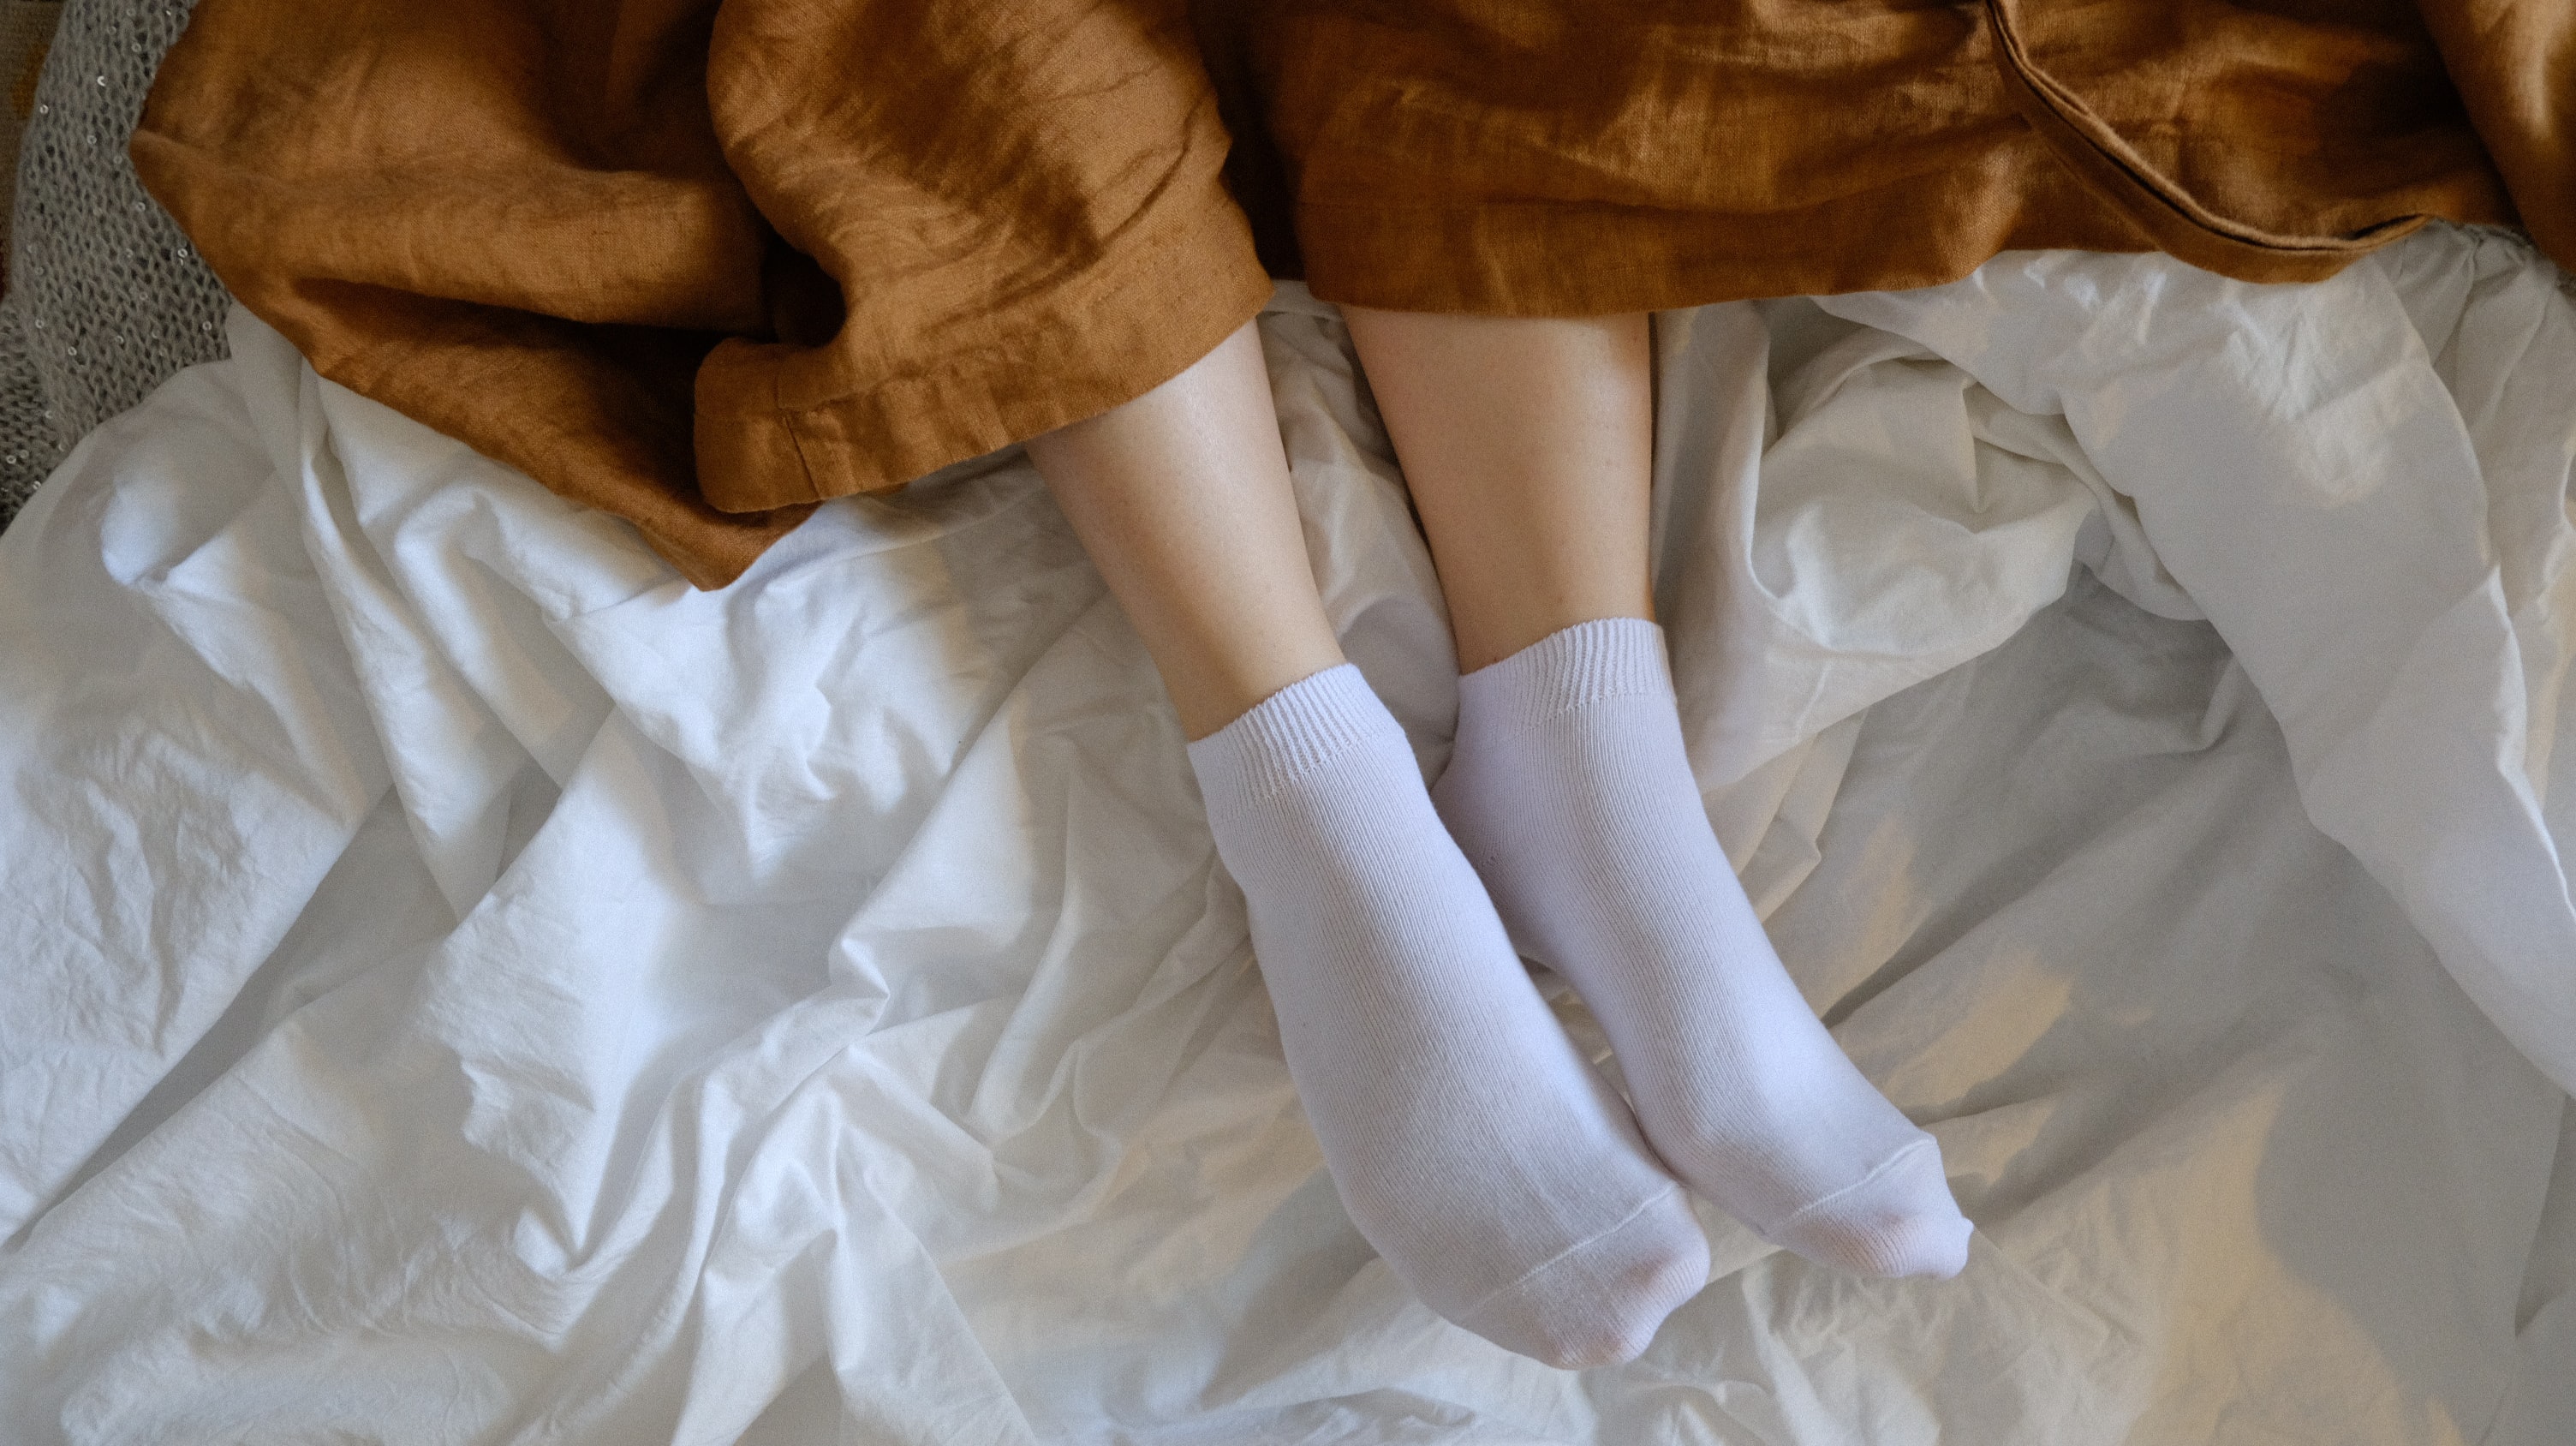 Socks White Socks Short Socks Legs Feet In Bed Linen Robe High Angle Women Women Indoors Model 3008x1688